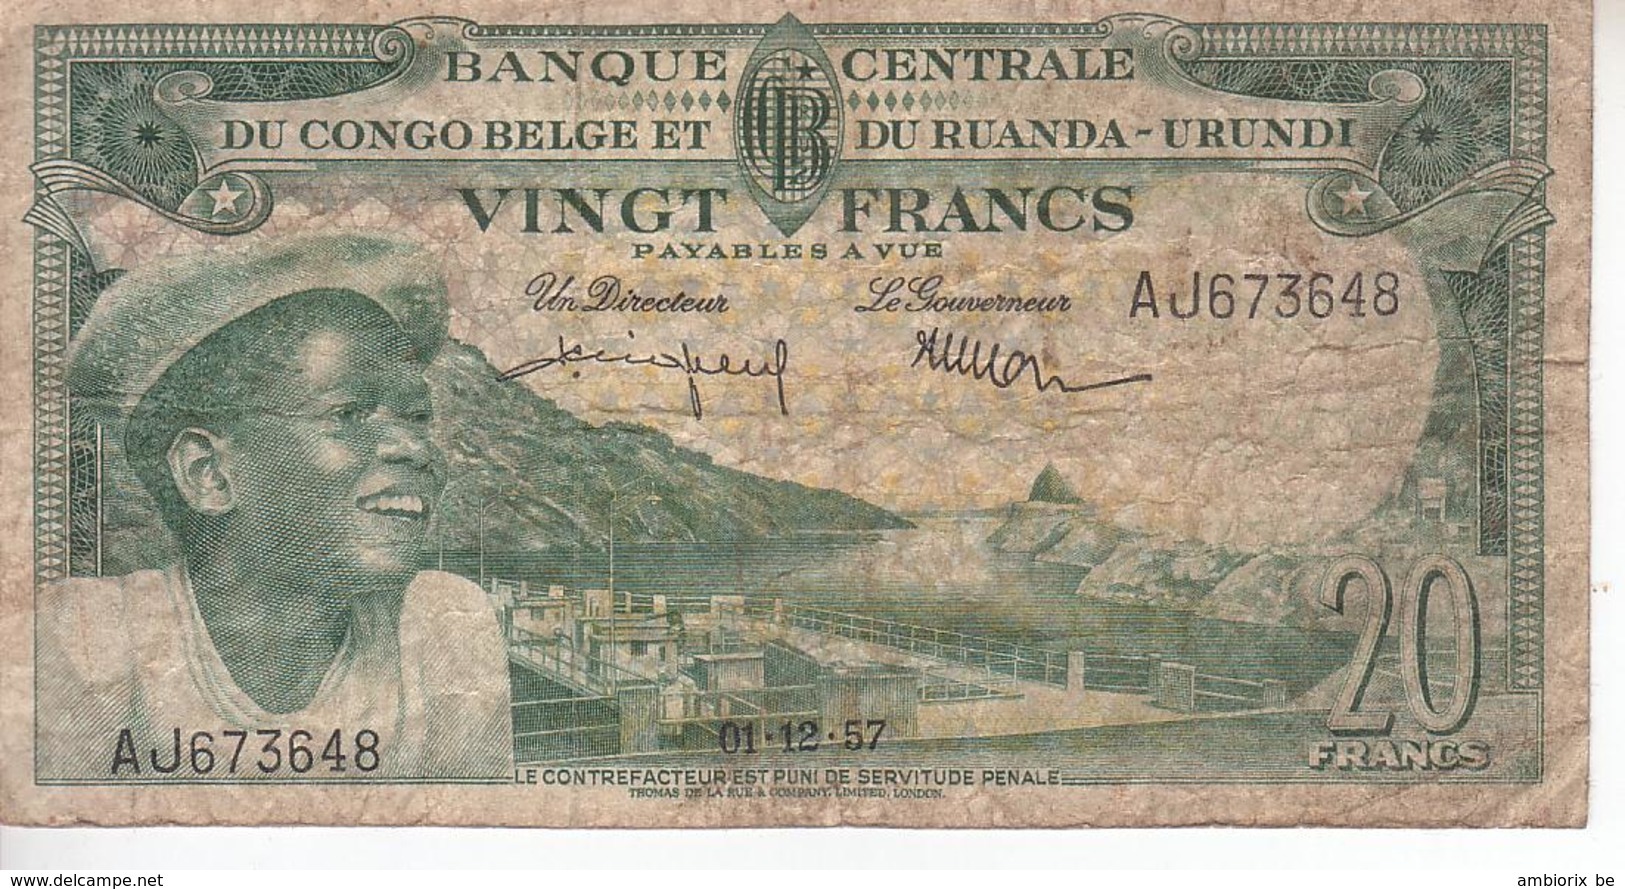 Banque Centrale Du Congo Belge Et Du Ruanda Urundi - 20 Francs - 01 12 1957 - République Démocratique Du Congo & Zaïre